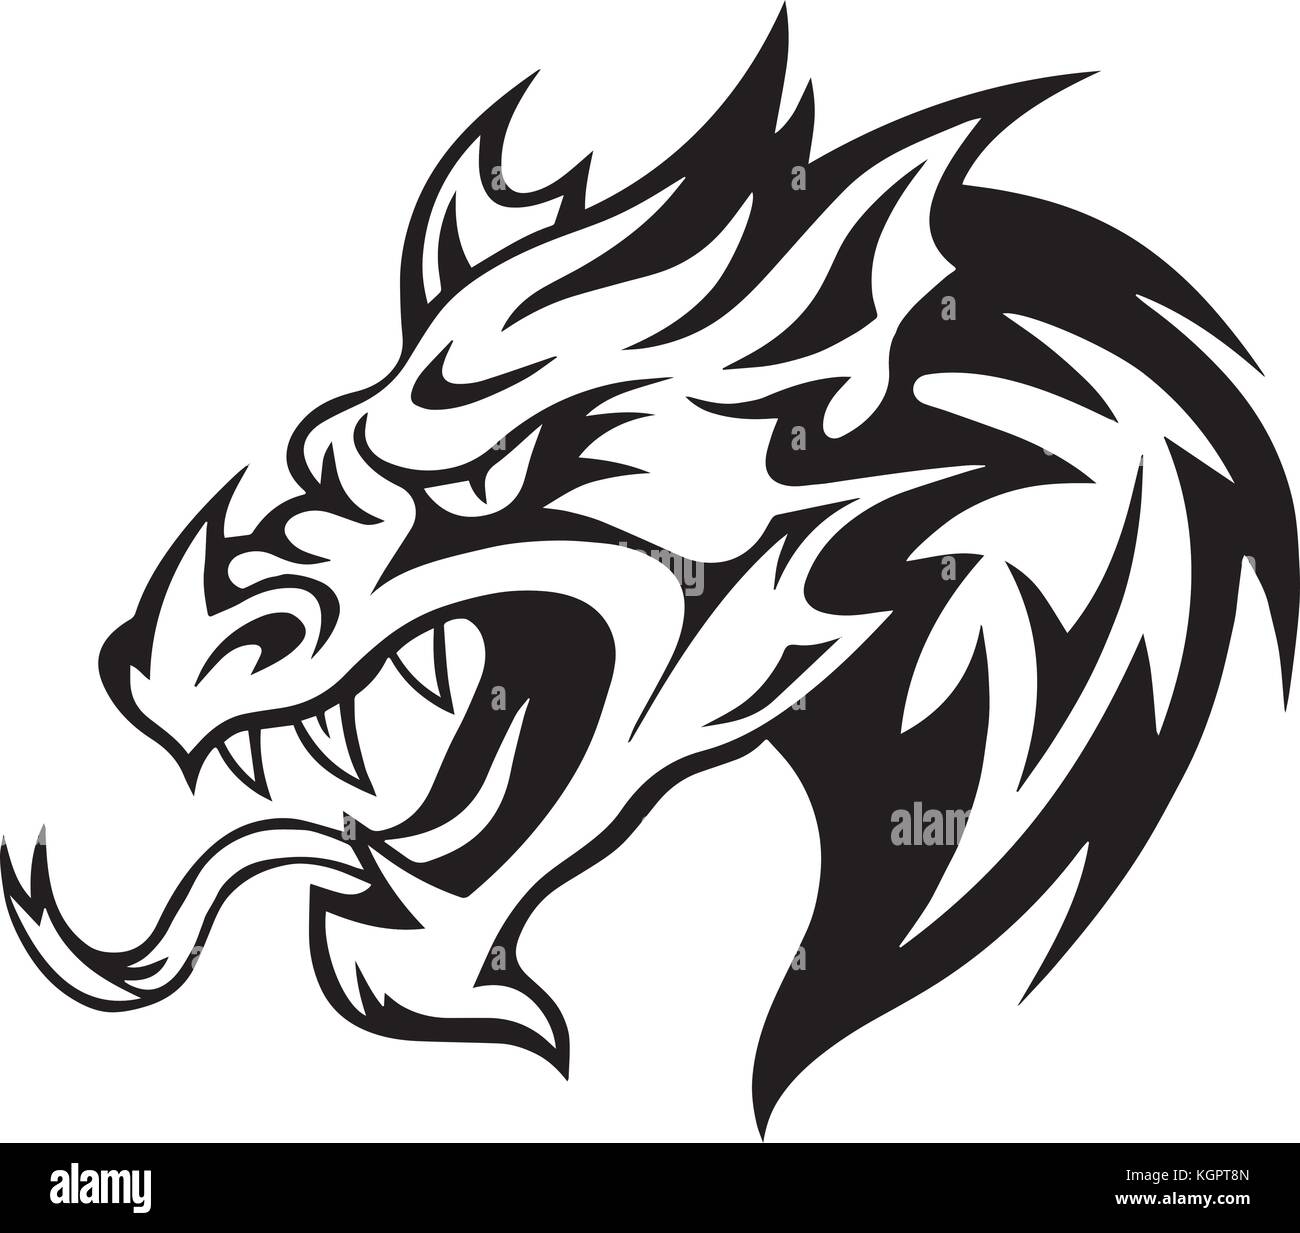 Dragon head logo Stock Vector